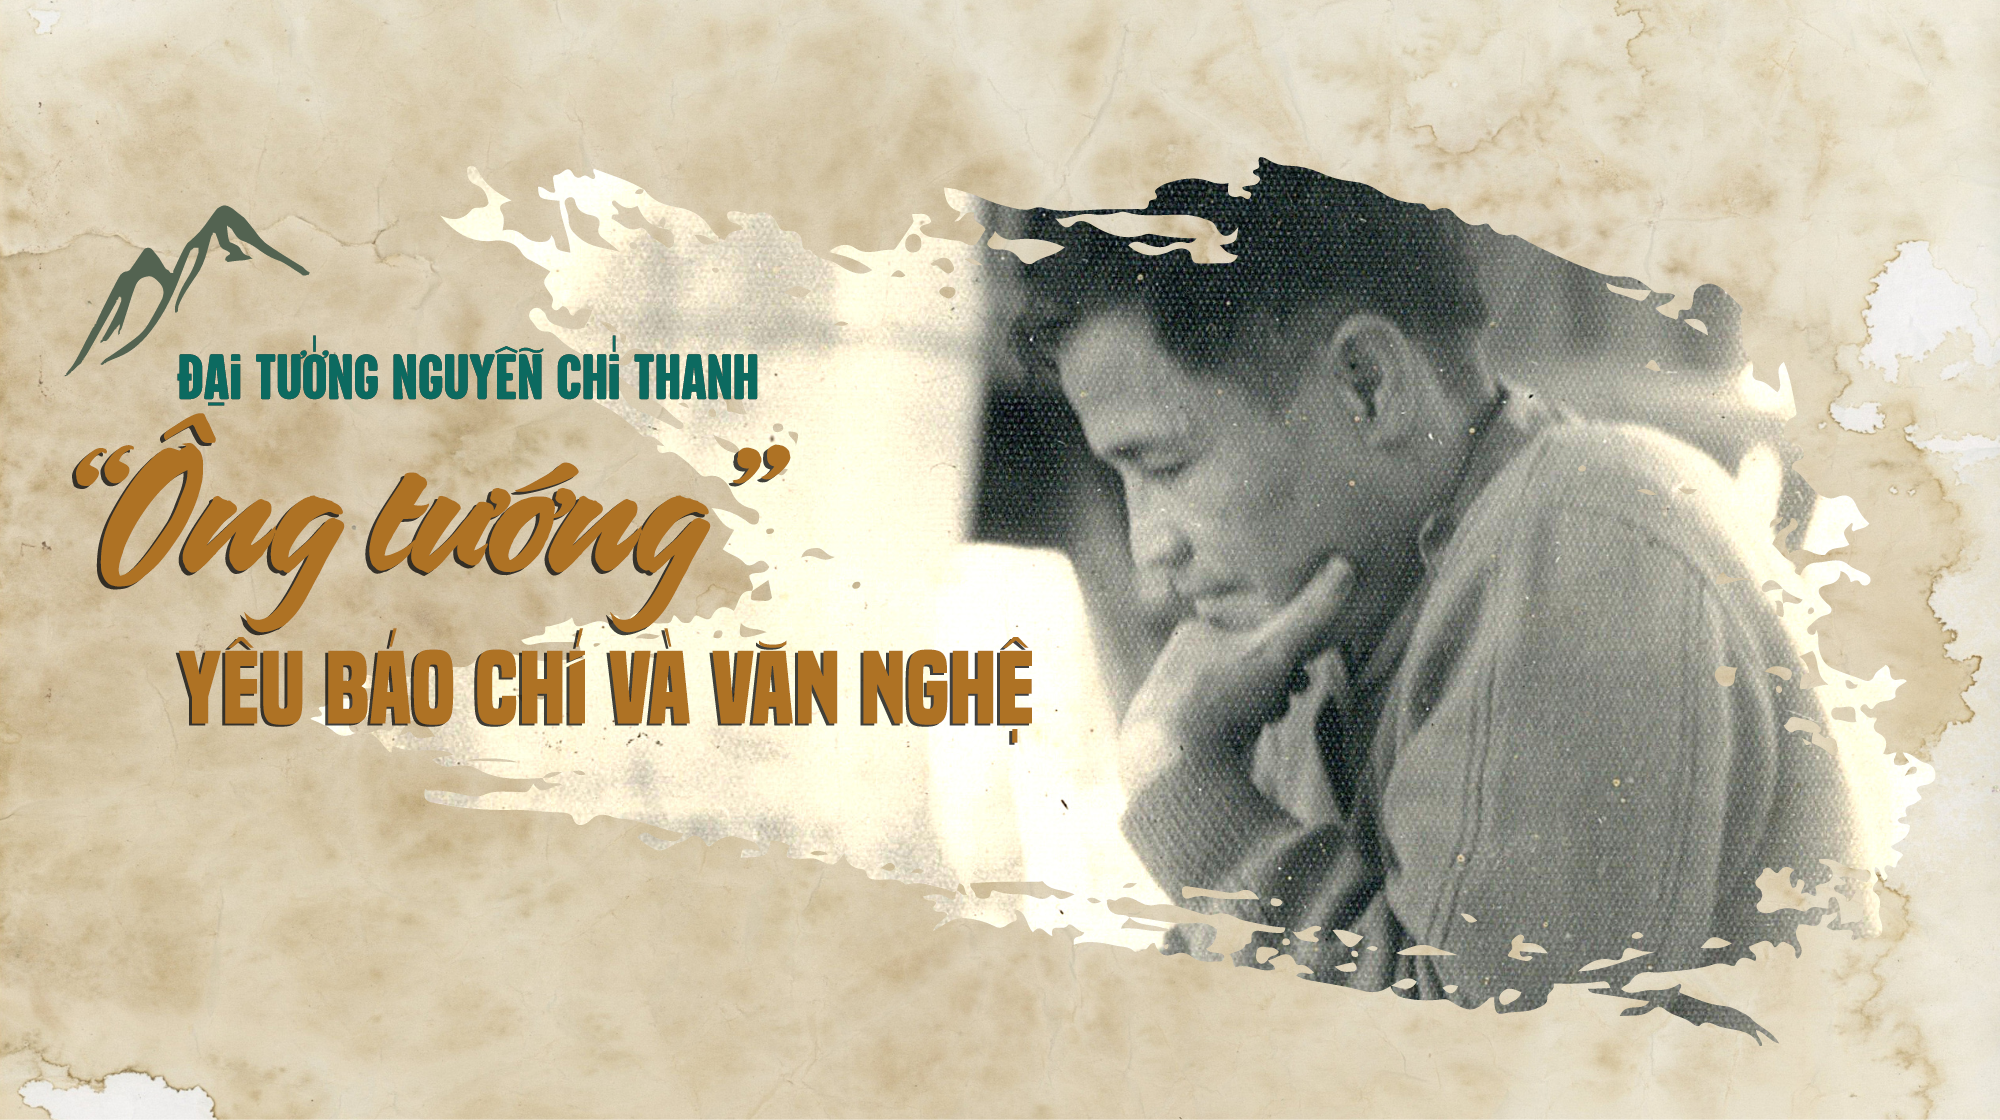 Đại tướng Nguyễn Chí Thanh - 'Ông tướng' yêu báo chí và văn nghệ